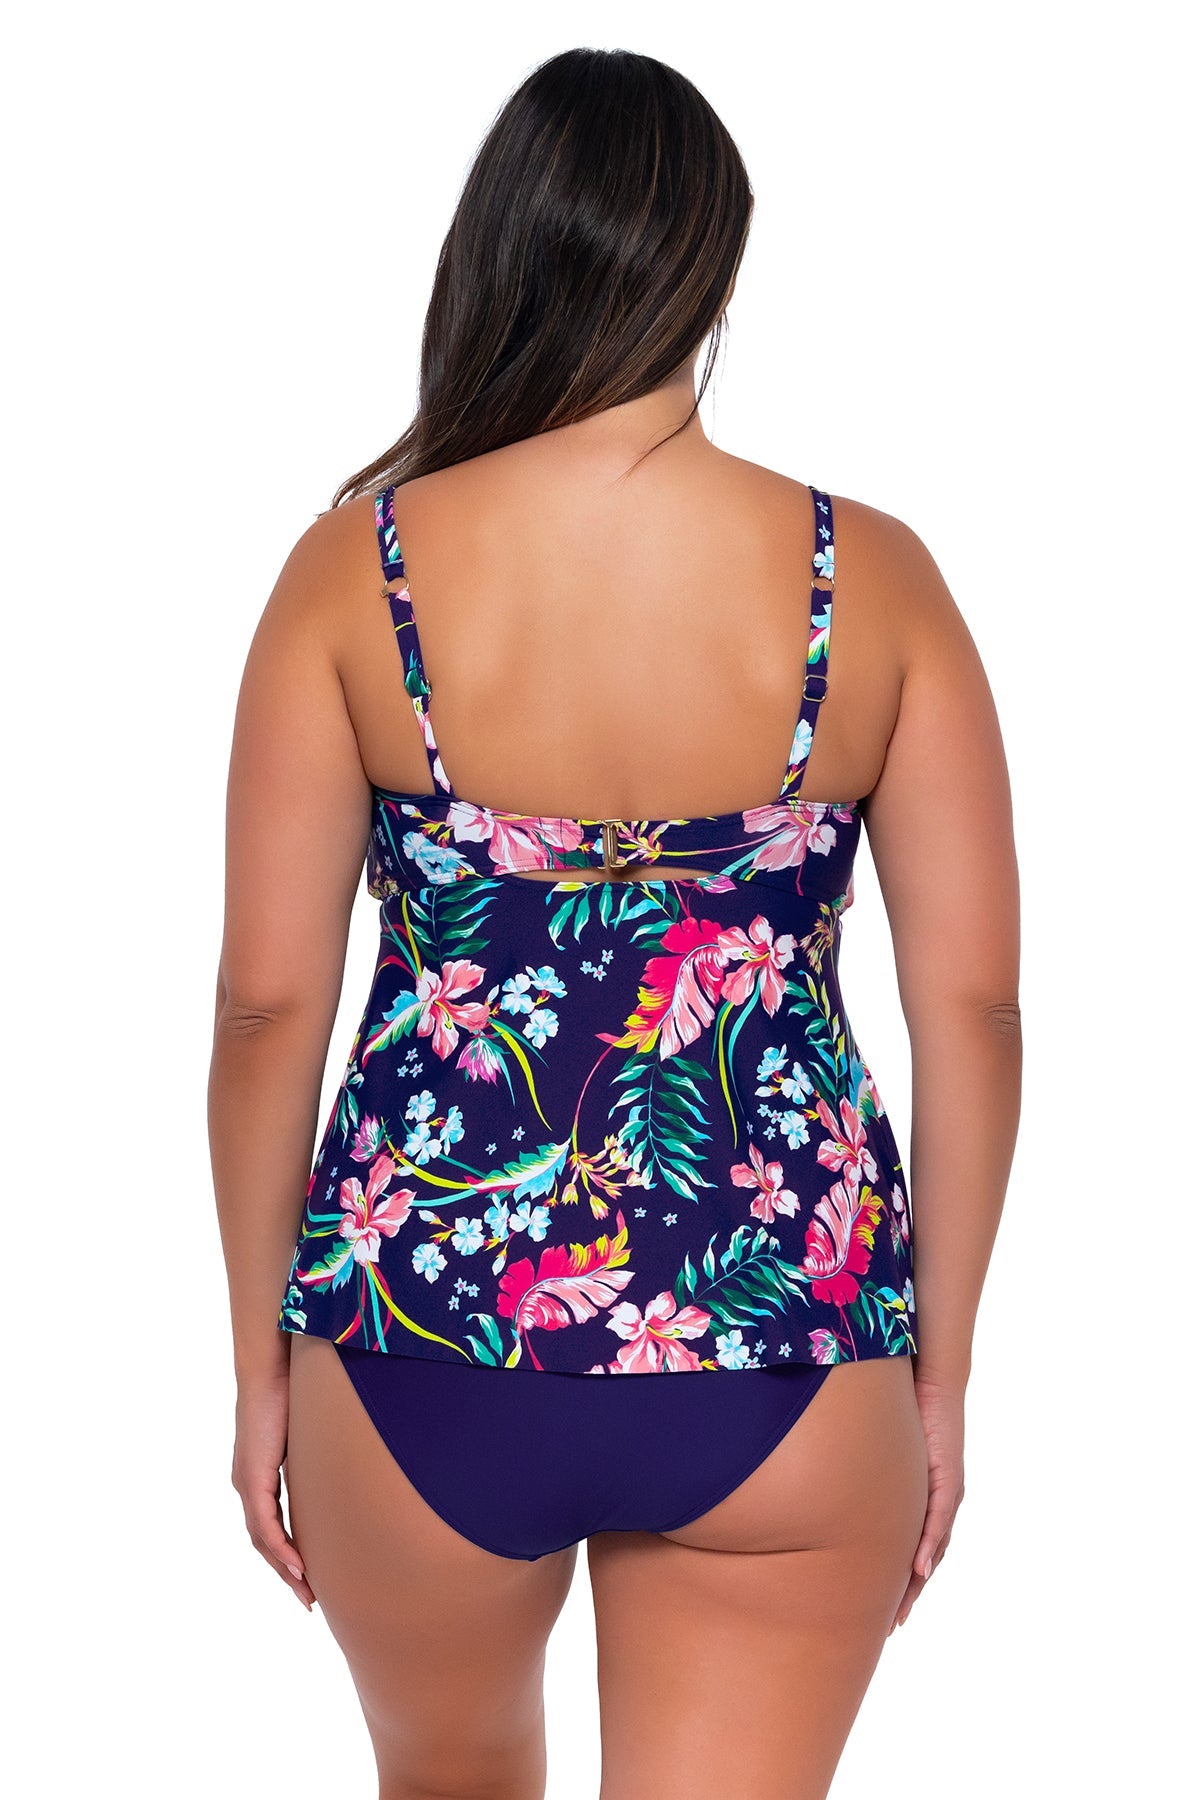 Sunsets Women's Swimwear Escape Island Getaway Tori Tankini Bikini Top